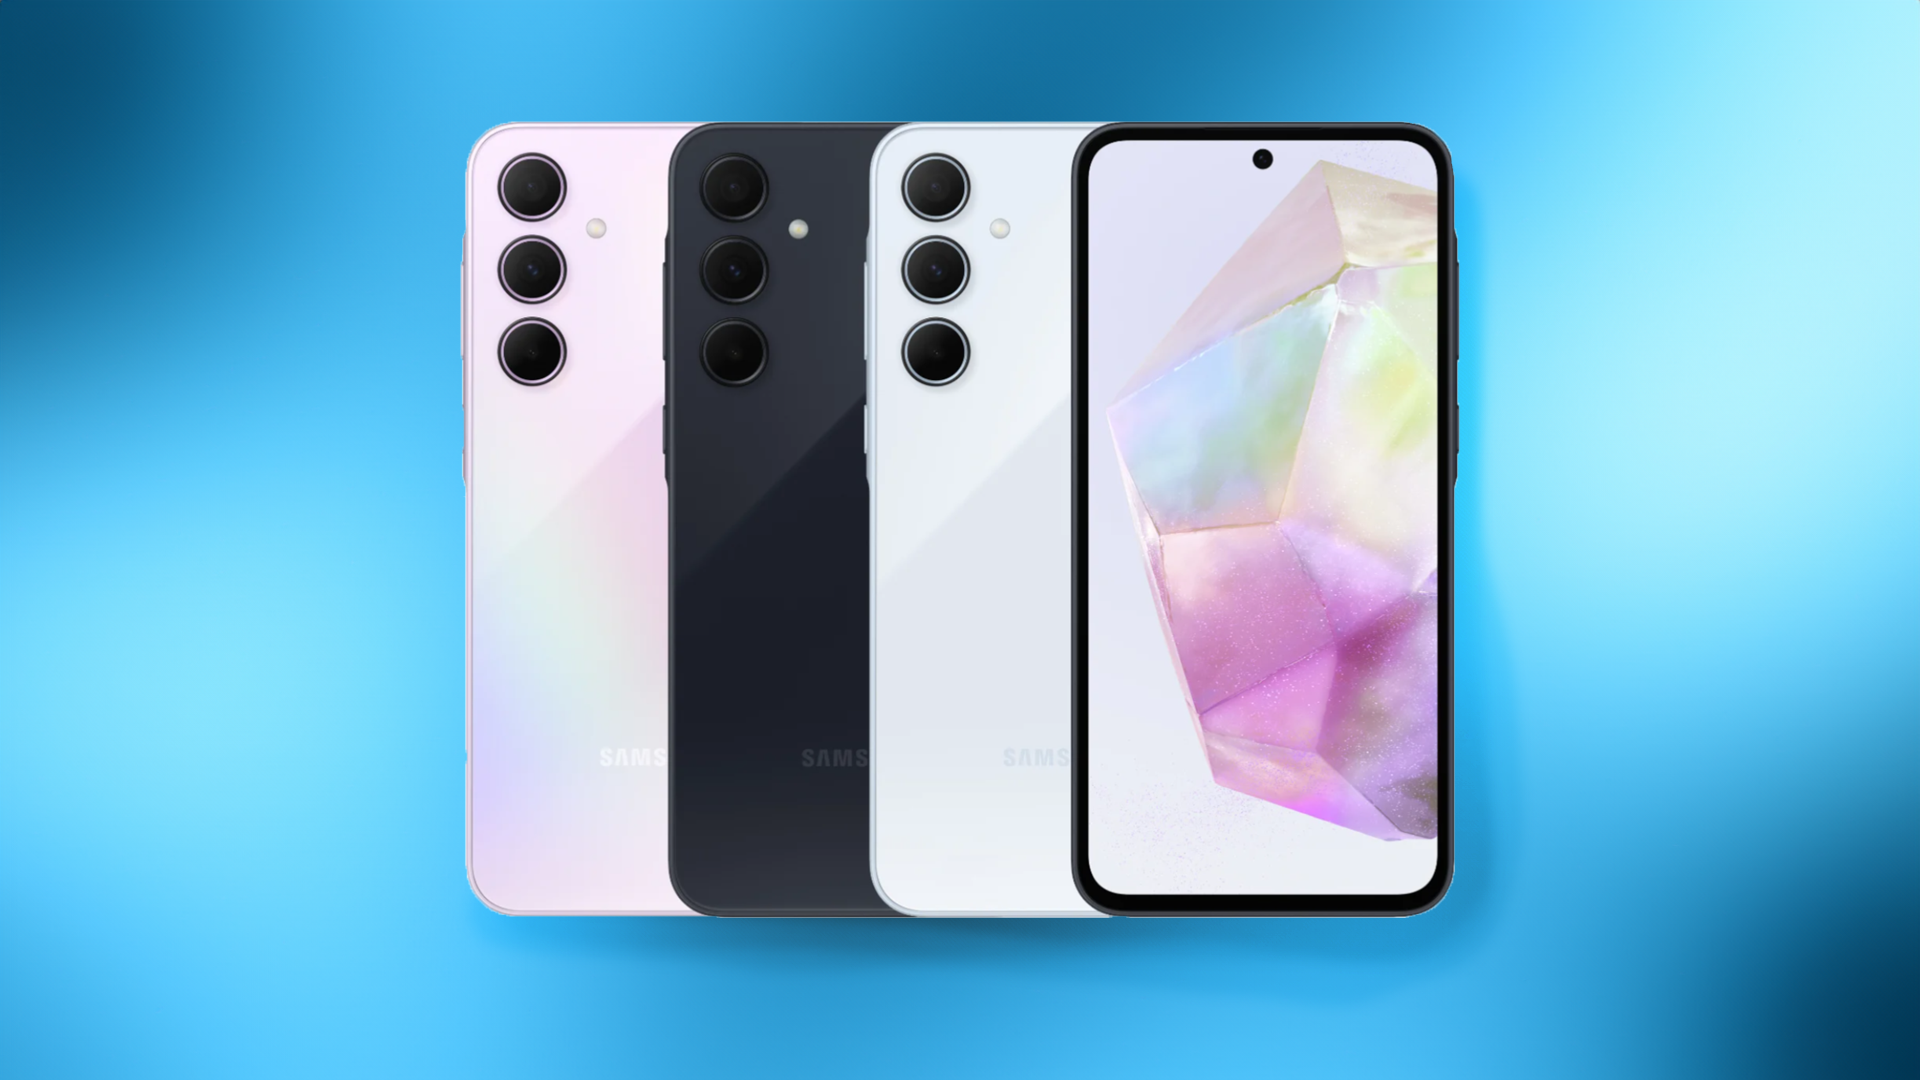 Trzy smartfony Samsung w różnych kolorach ułożone obok siebie na niebieskim tle z widokiem z tyłu oraz jeden smartfon Samsung widokiem z przodu po prawej stronie.